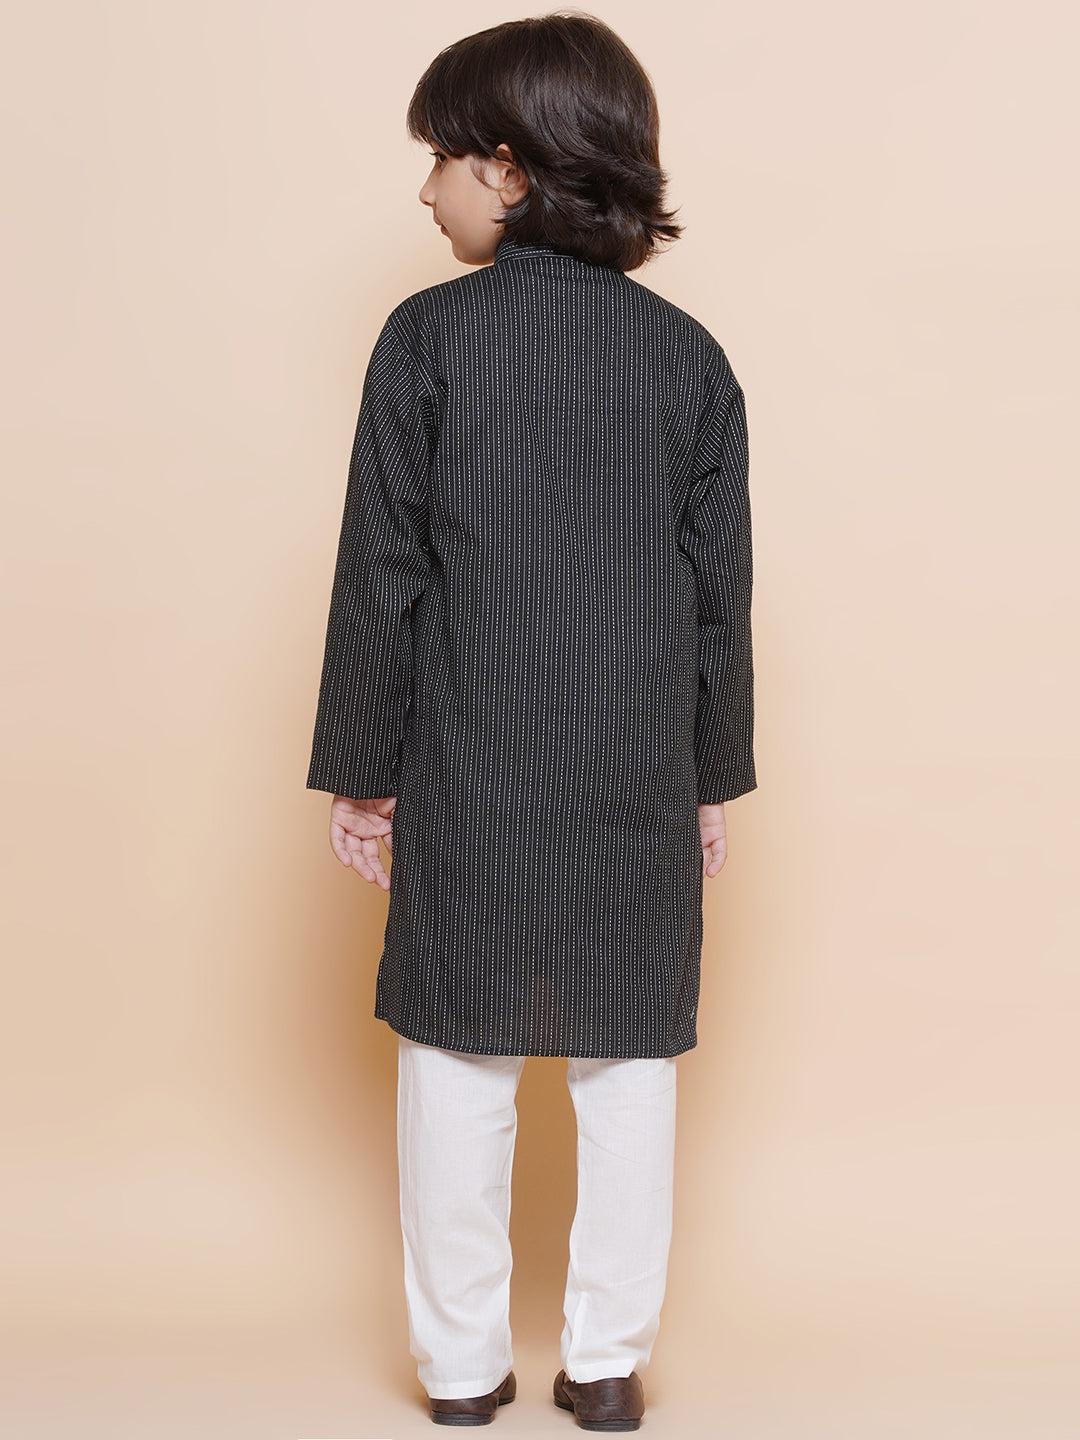 Boys Black Cotton Embroidery print full Sleeve kurta pyjama set